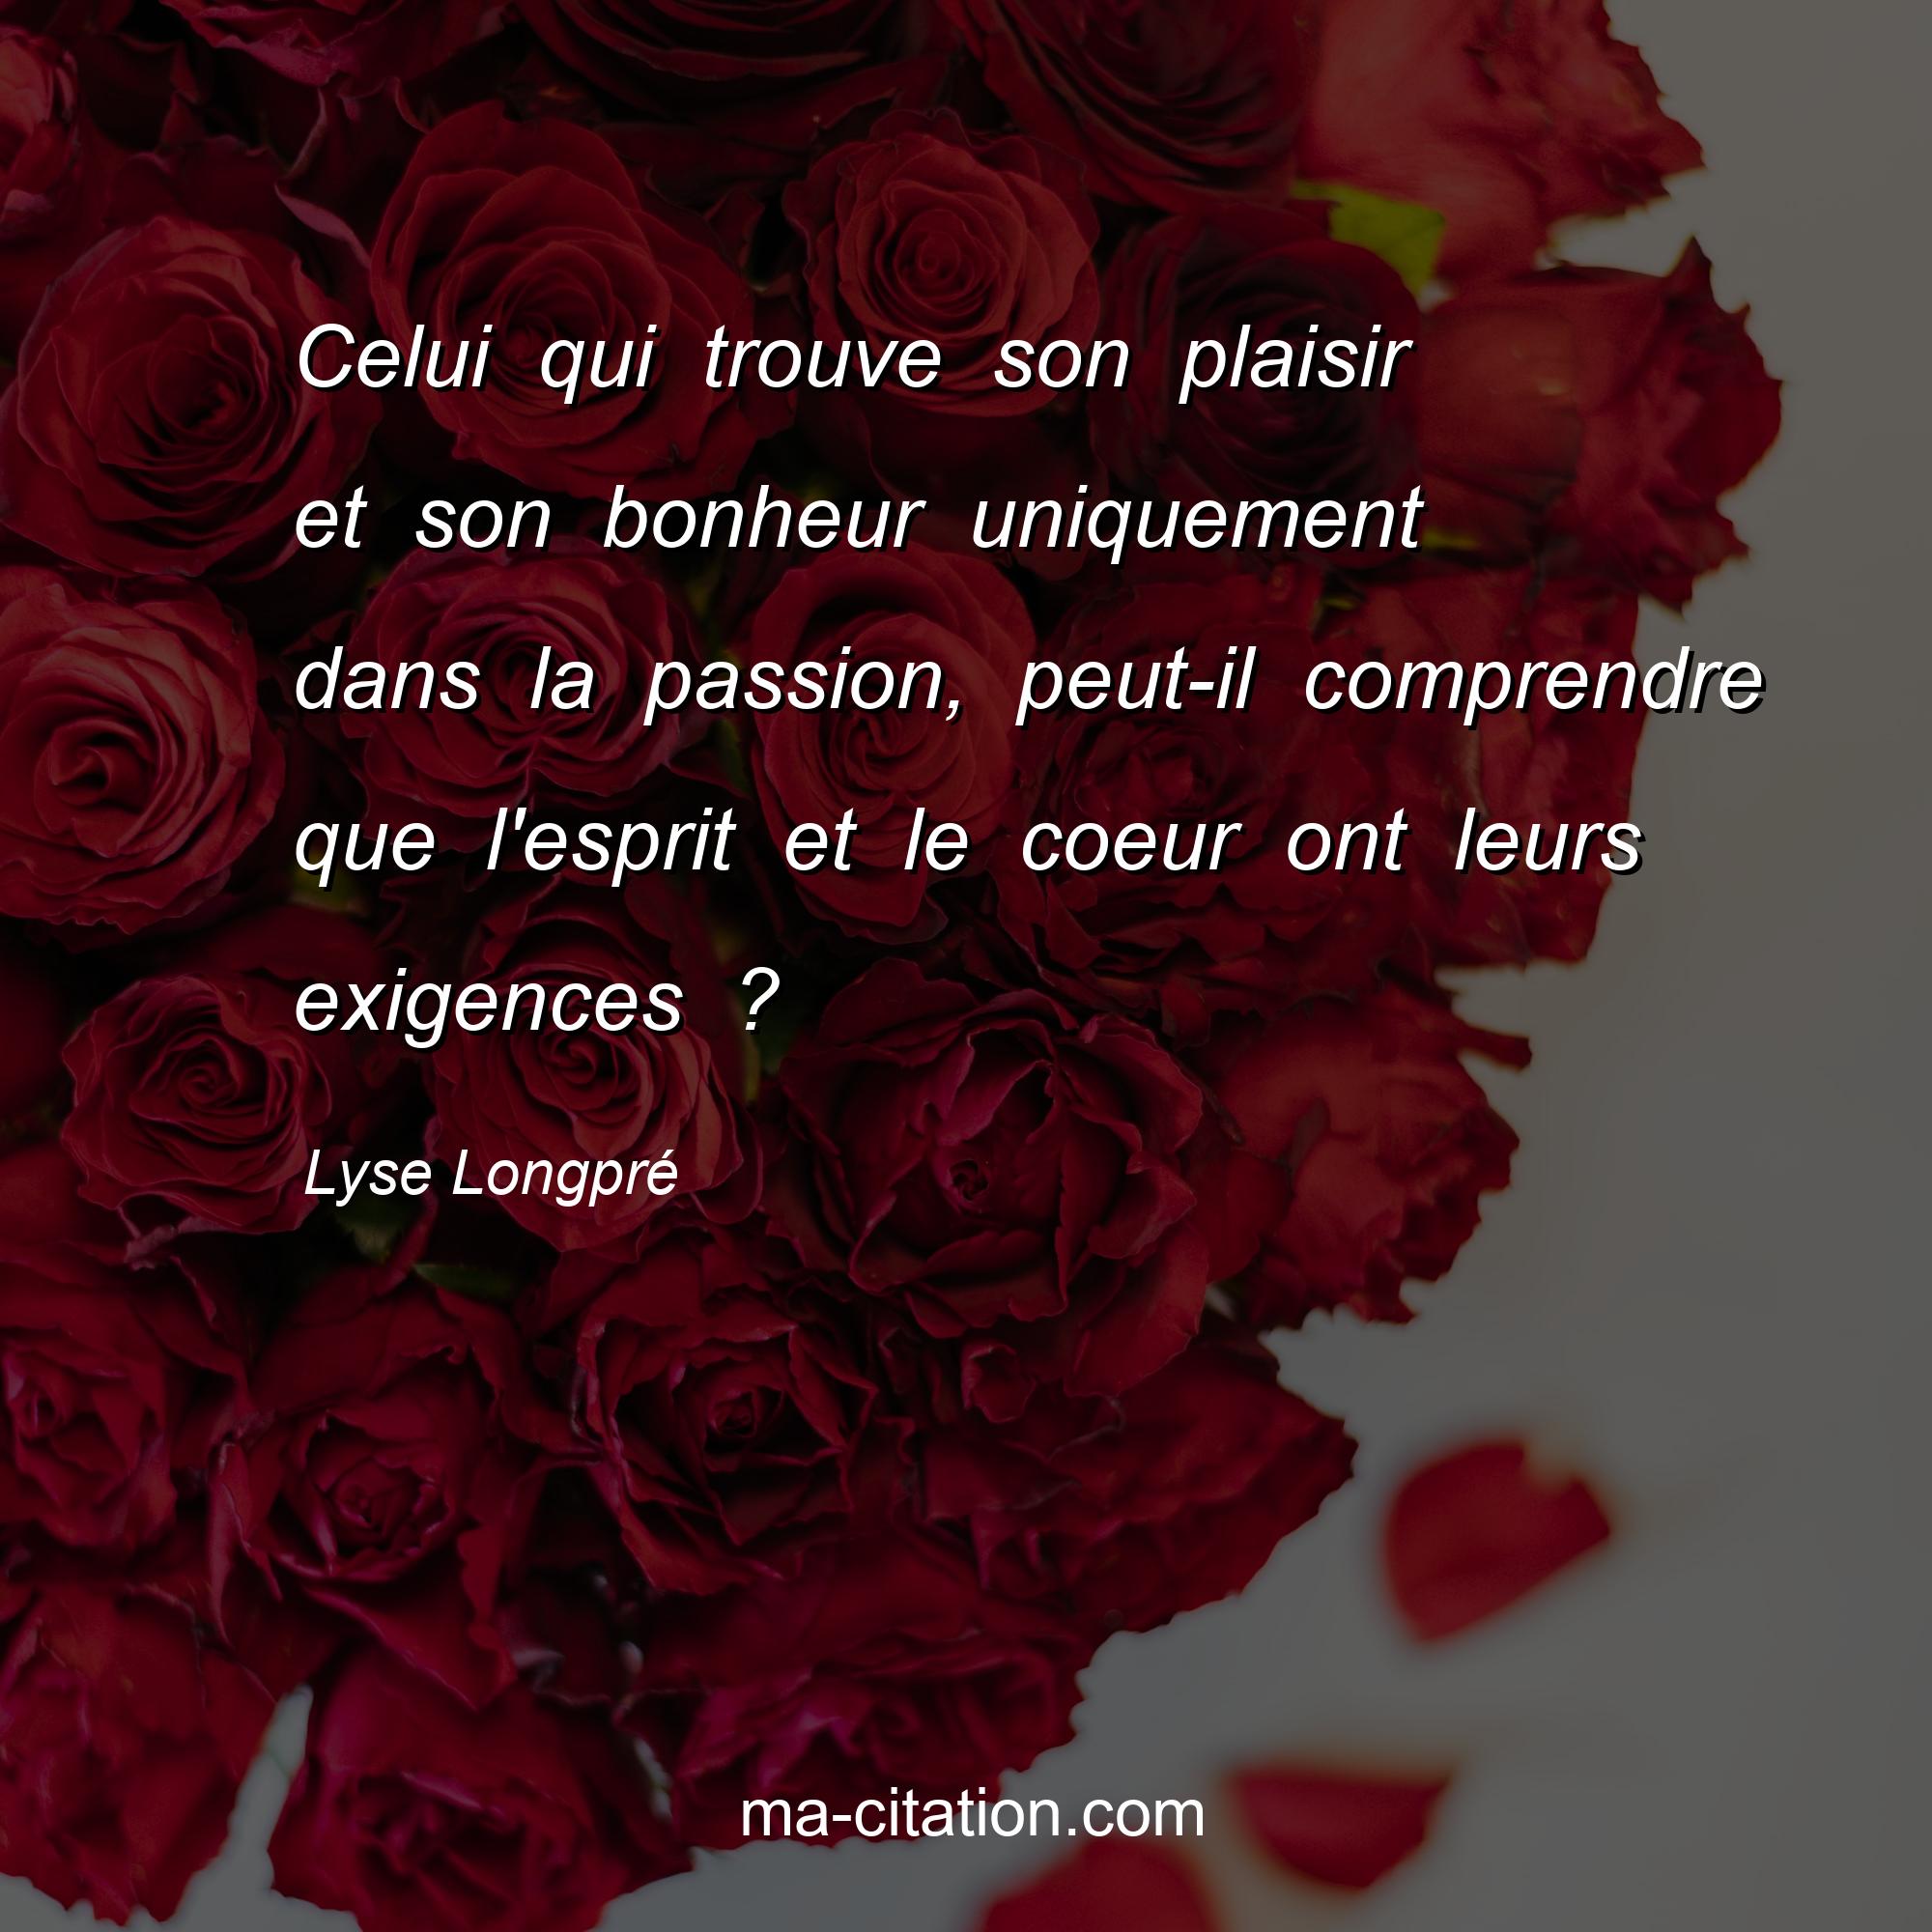 Lyse Longpré : Celui qui trouve son plaisir et son bonheur uniquement dans la passion, peut-il comprendre que l'esprit et le coeur ont leurs exigences ?